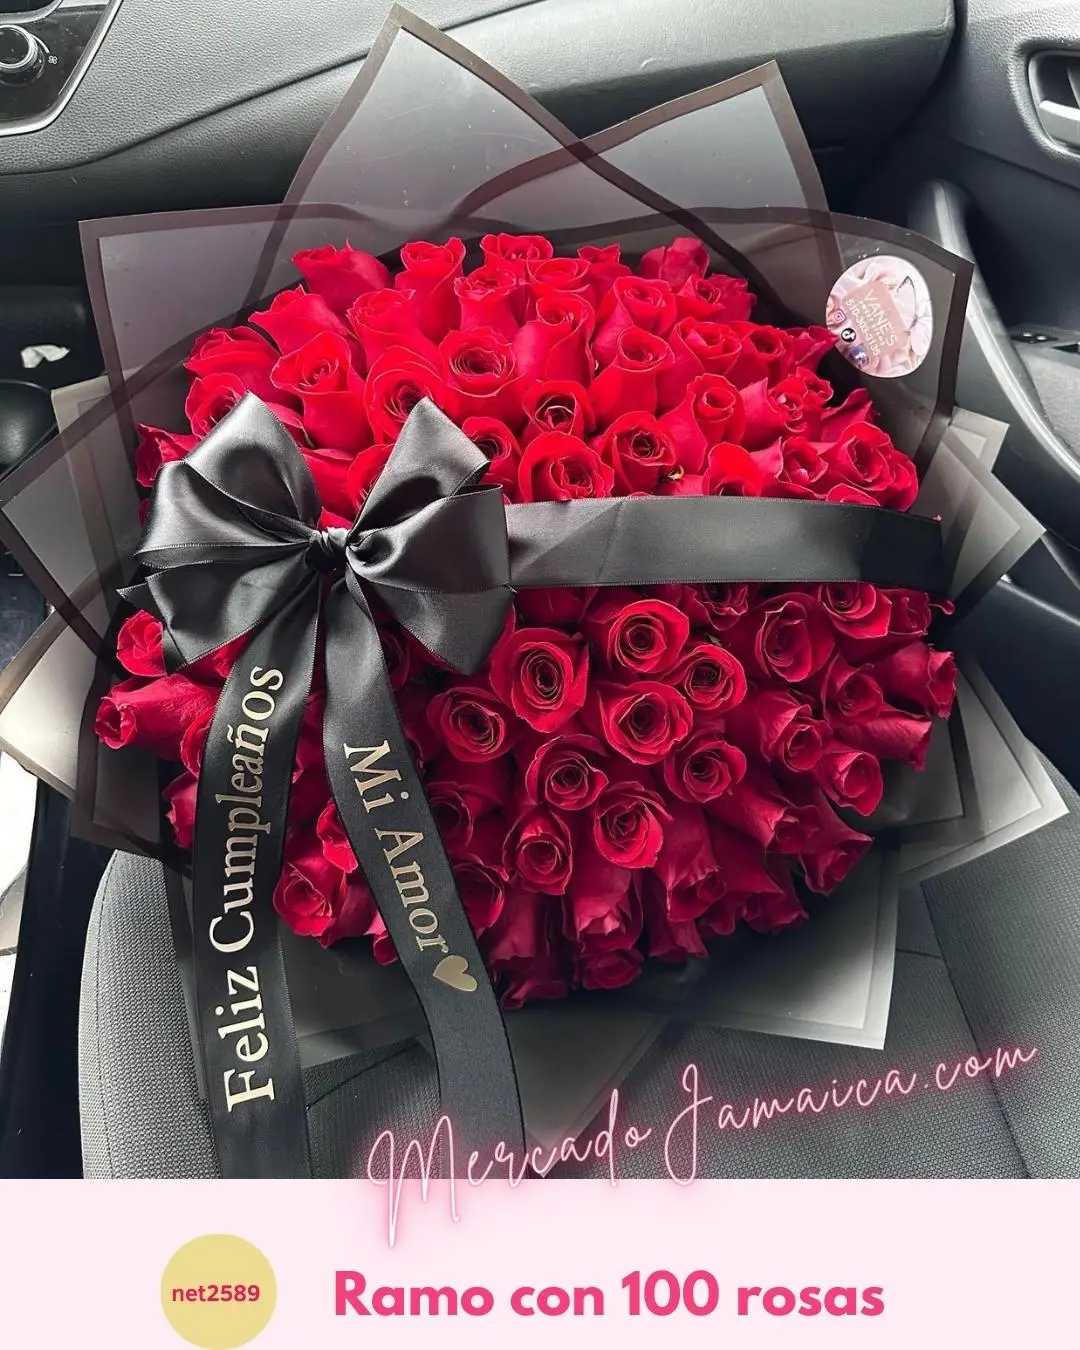 Ramo con rosas de amor y pasión ardiente: un regalo que representa una pasión intensa y apasionada